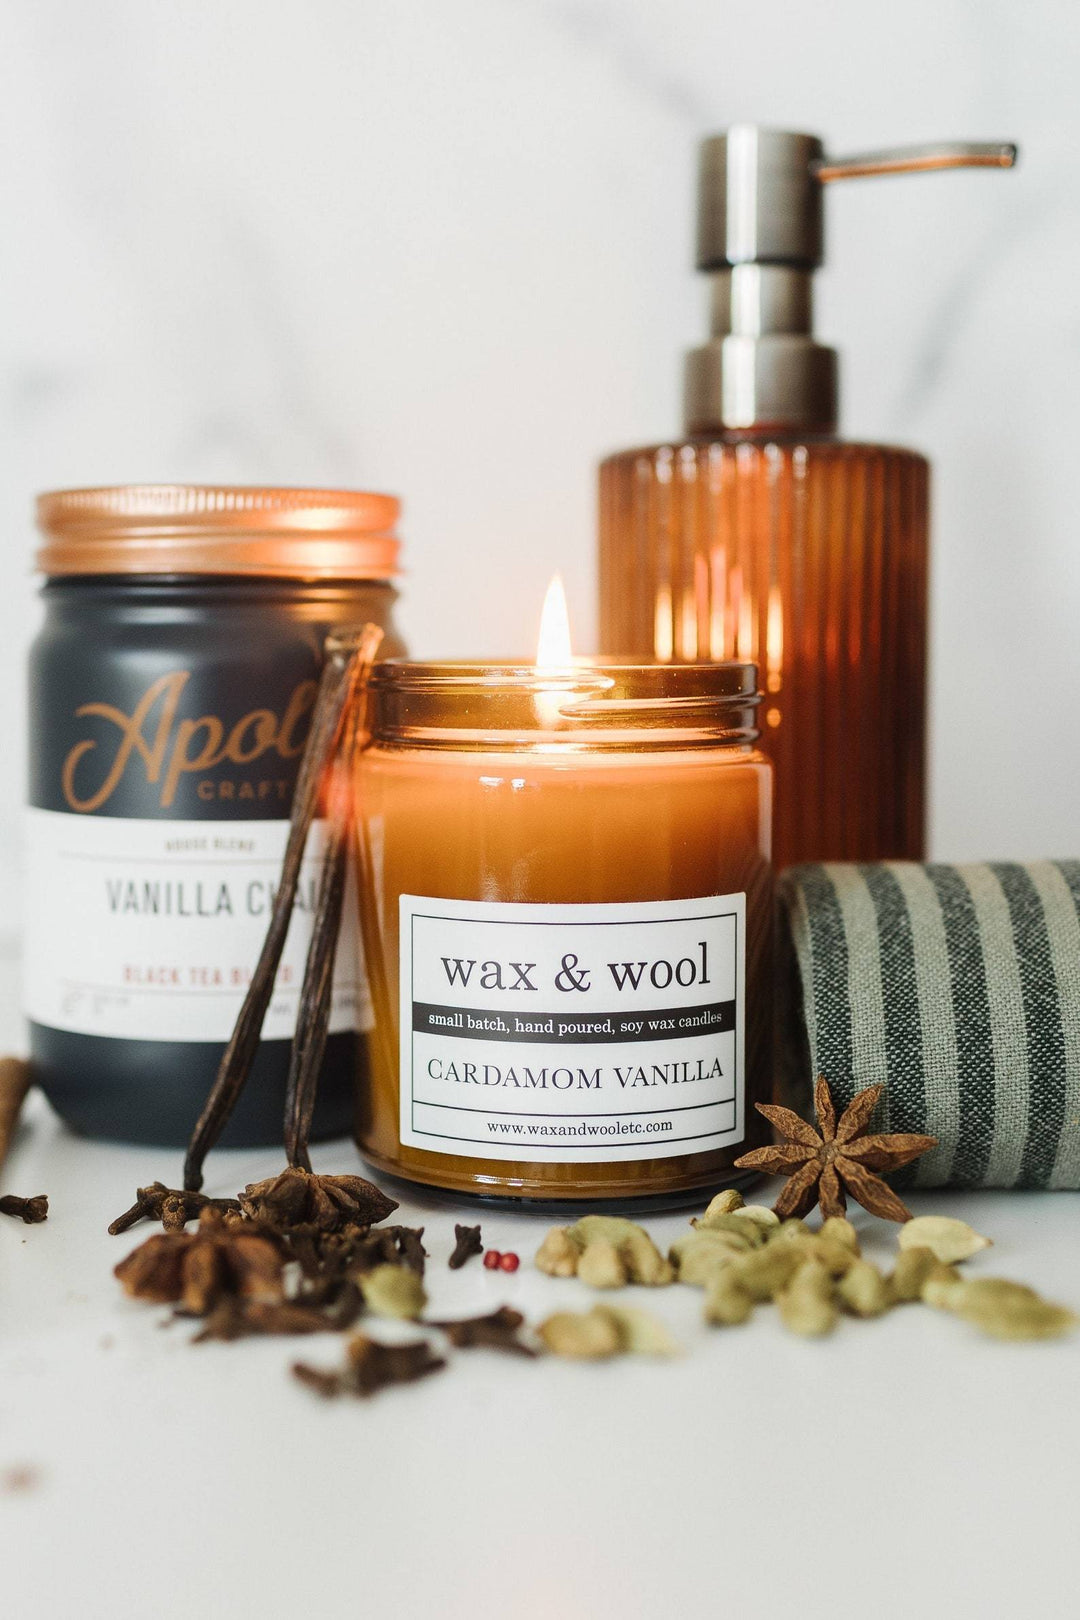 wax & wool Candle Cardamom Vanilla – 9 oz Pure Soy Wax Candle